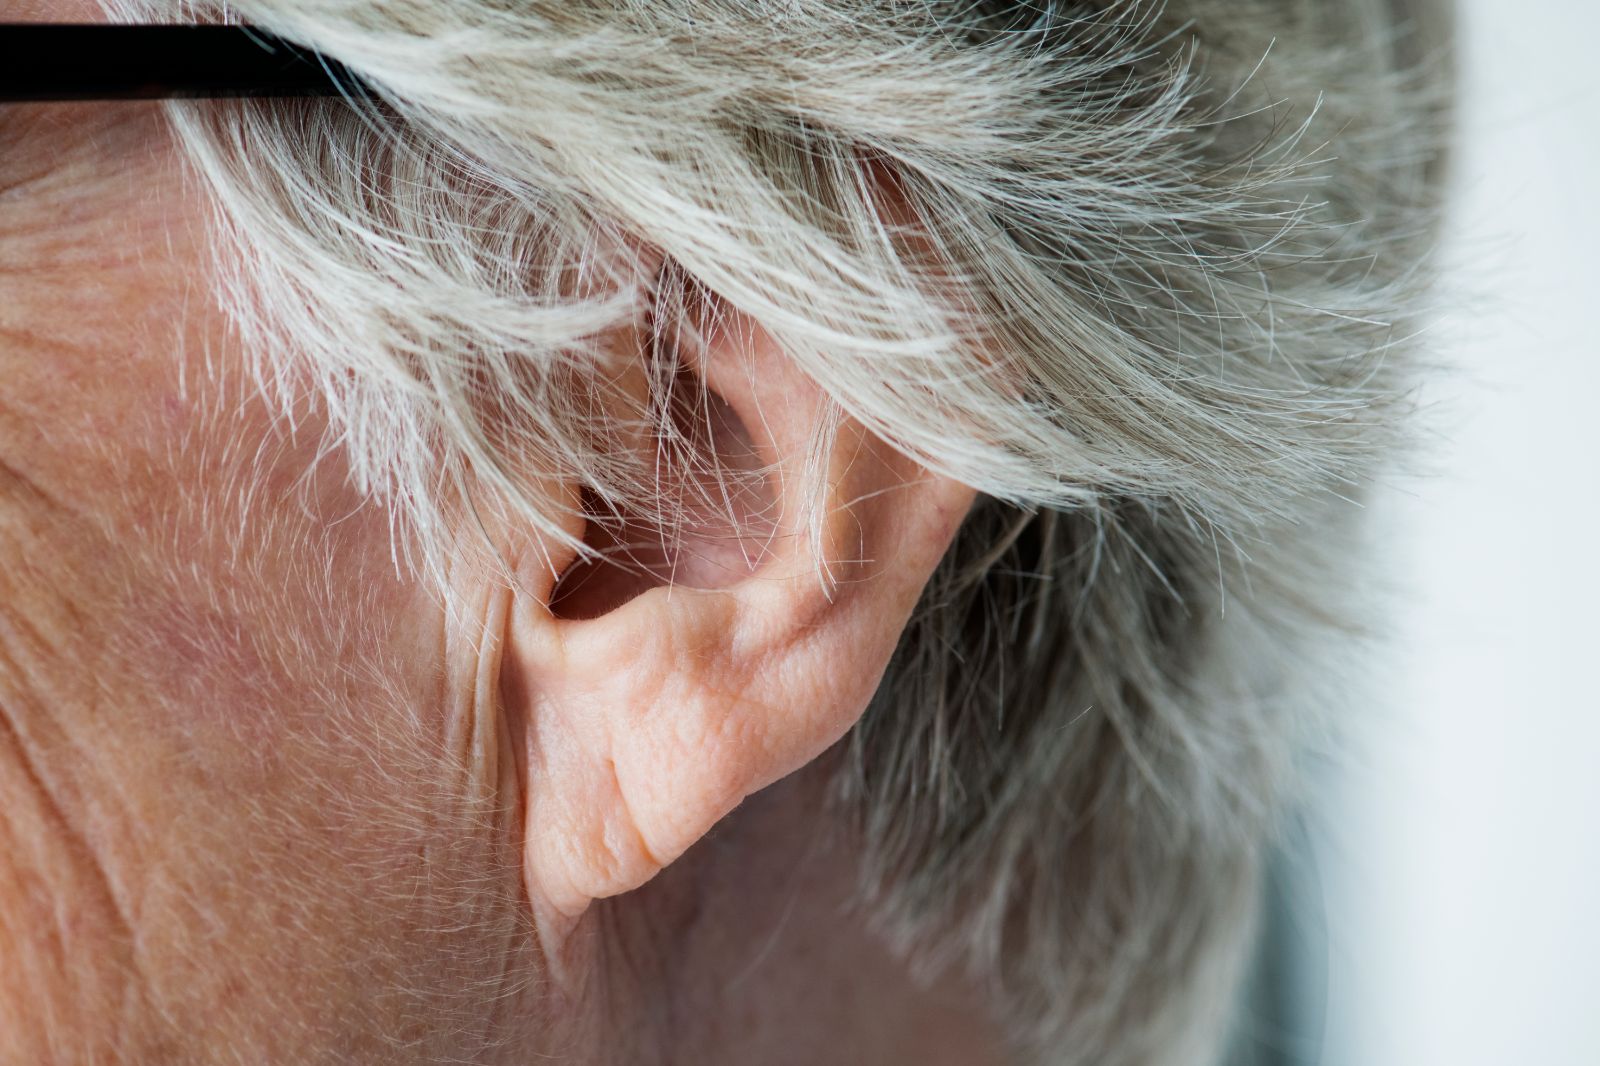 Peut-on nettoyer les oreilles avec de l'eau oxygénée ?